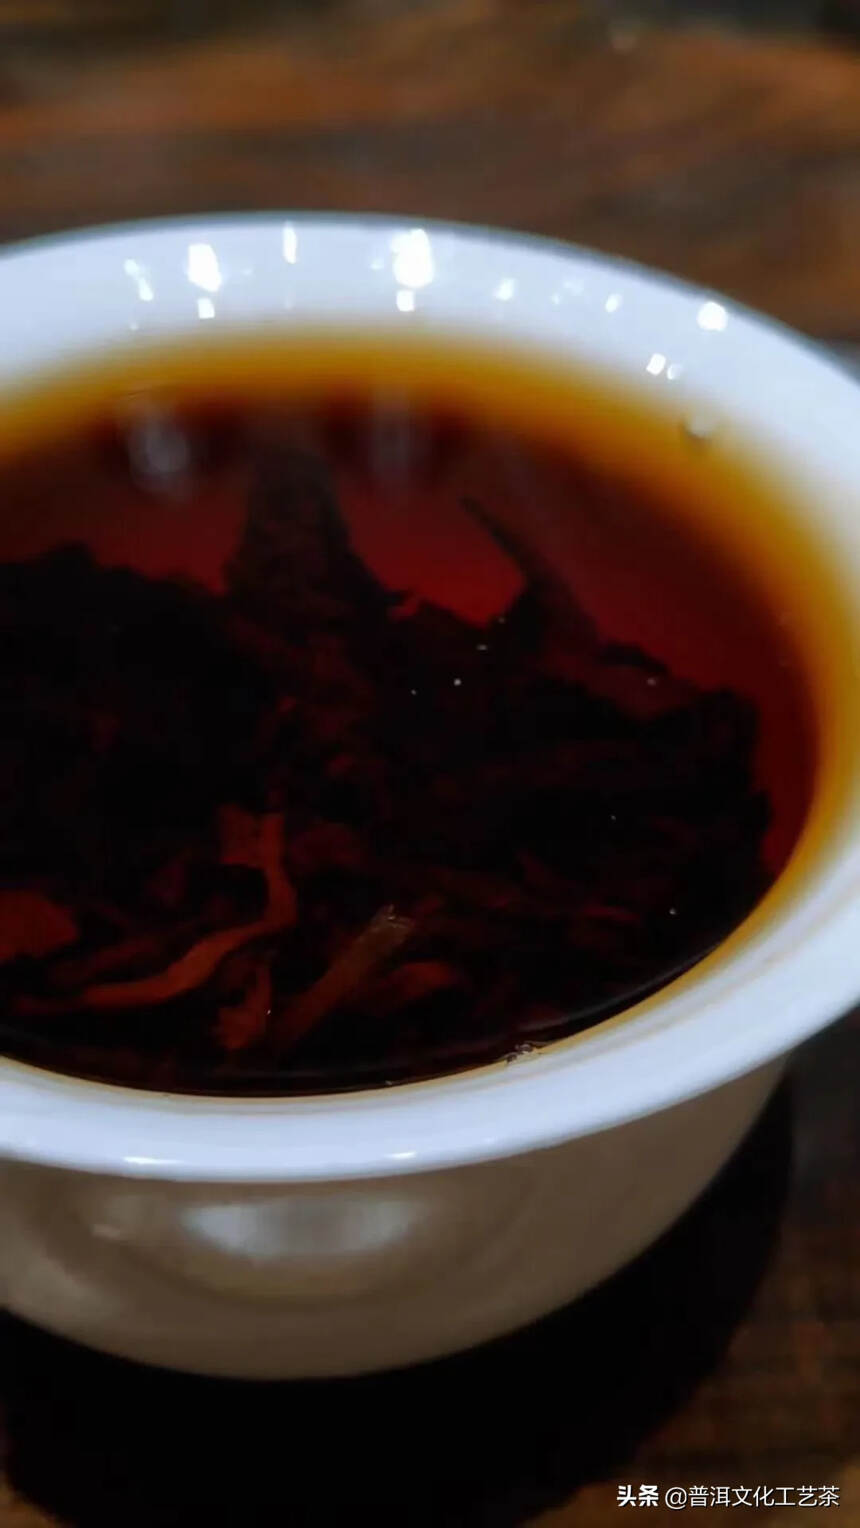 2017年龙园号乔木老树茶
原料选用勐海西双版纳高海